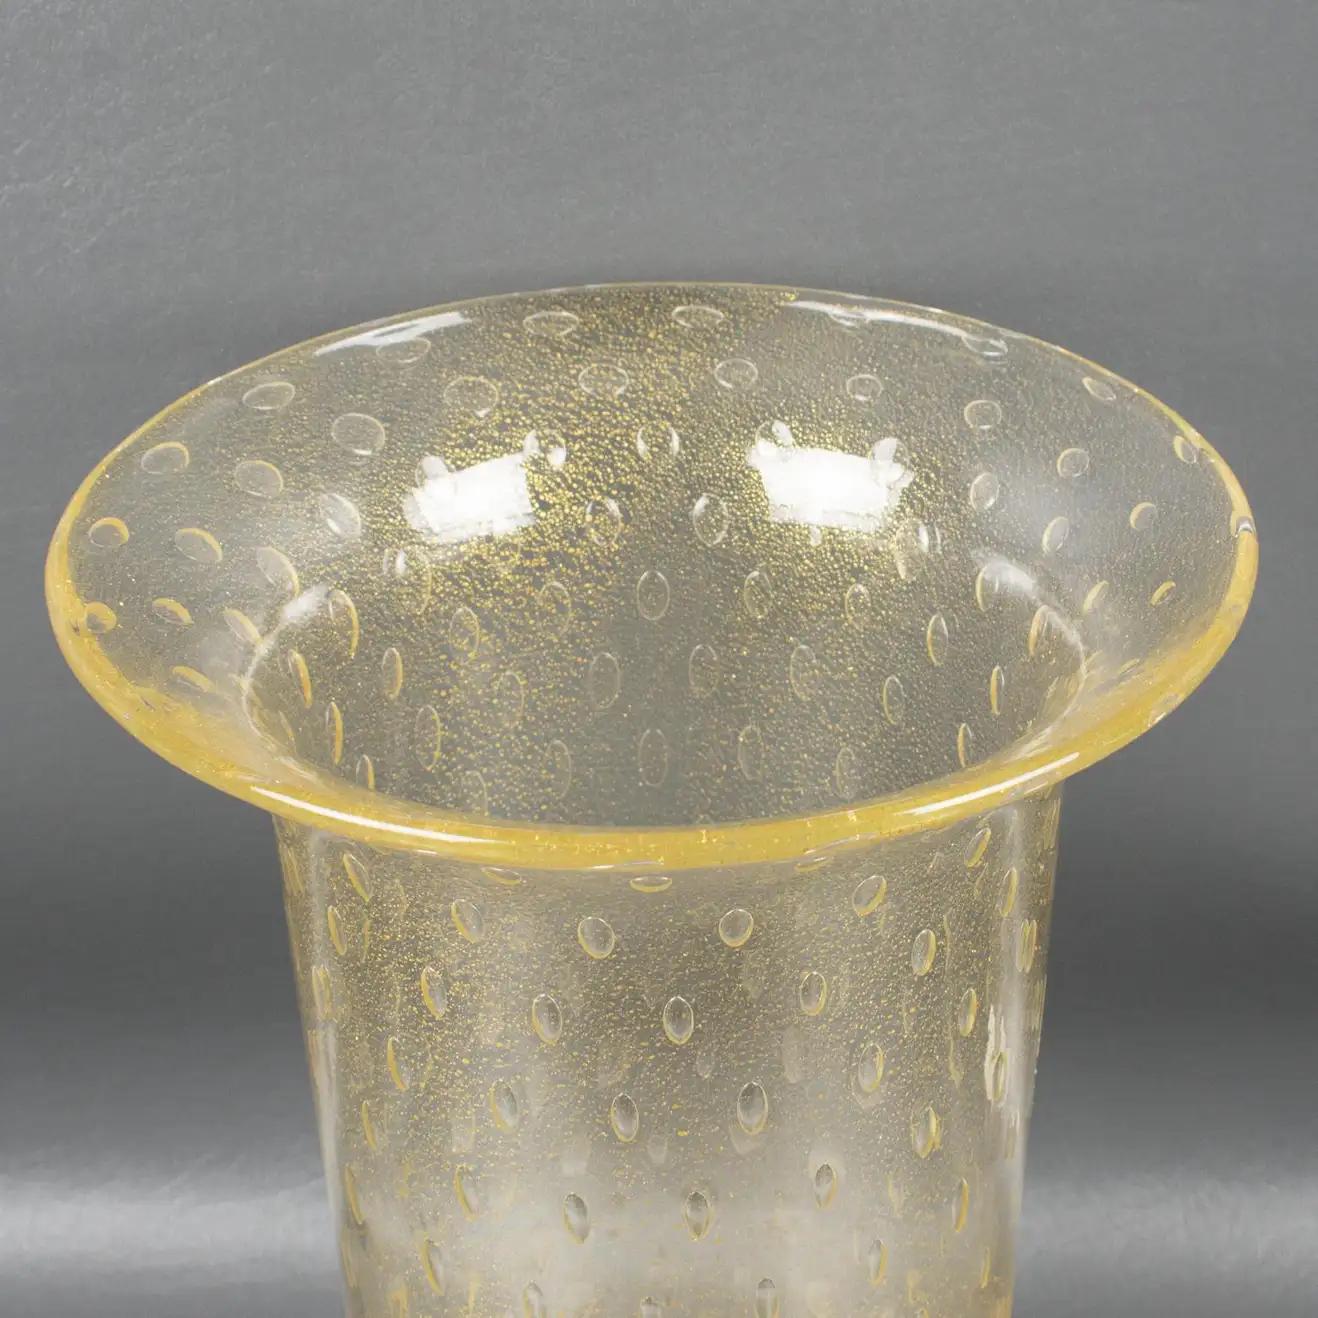 Italian Art Glass Murano Vase Gold Flakes and Bubbles by Gambaro & Poggi For Sale 6